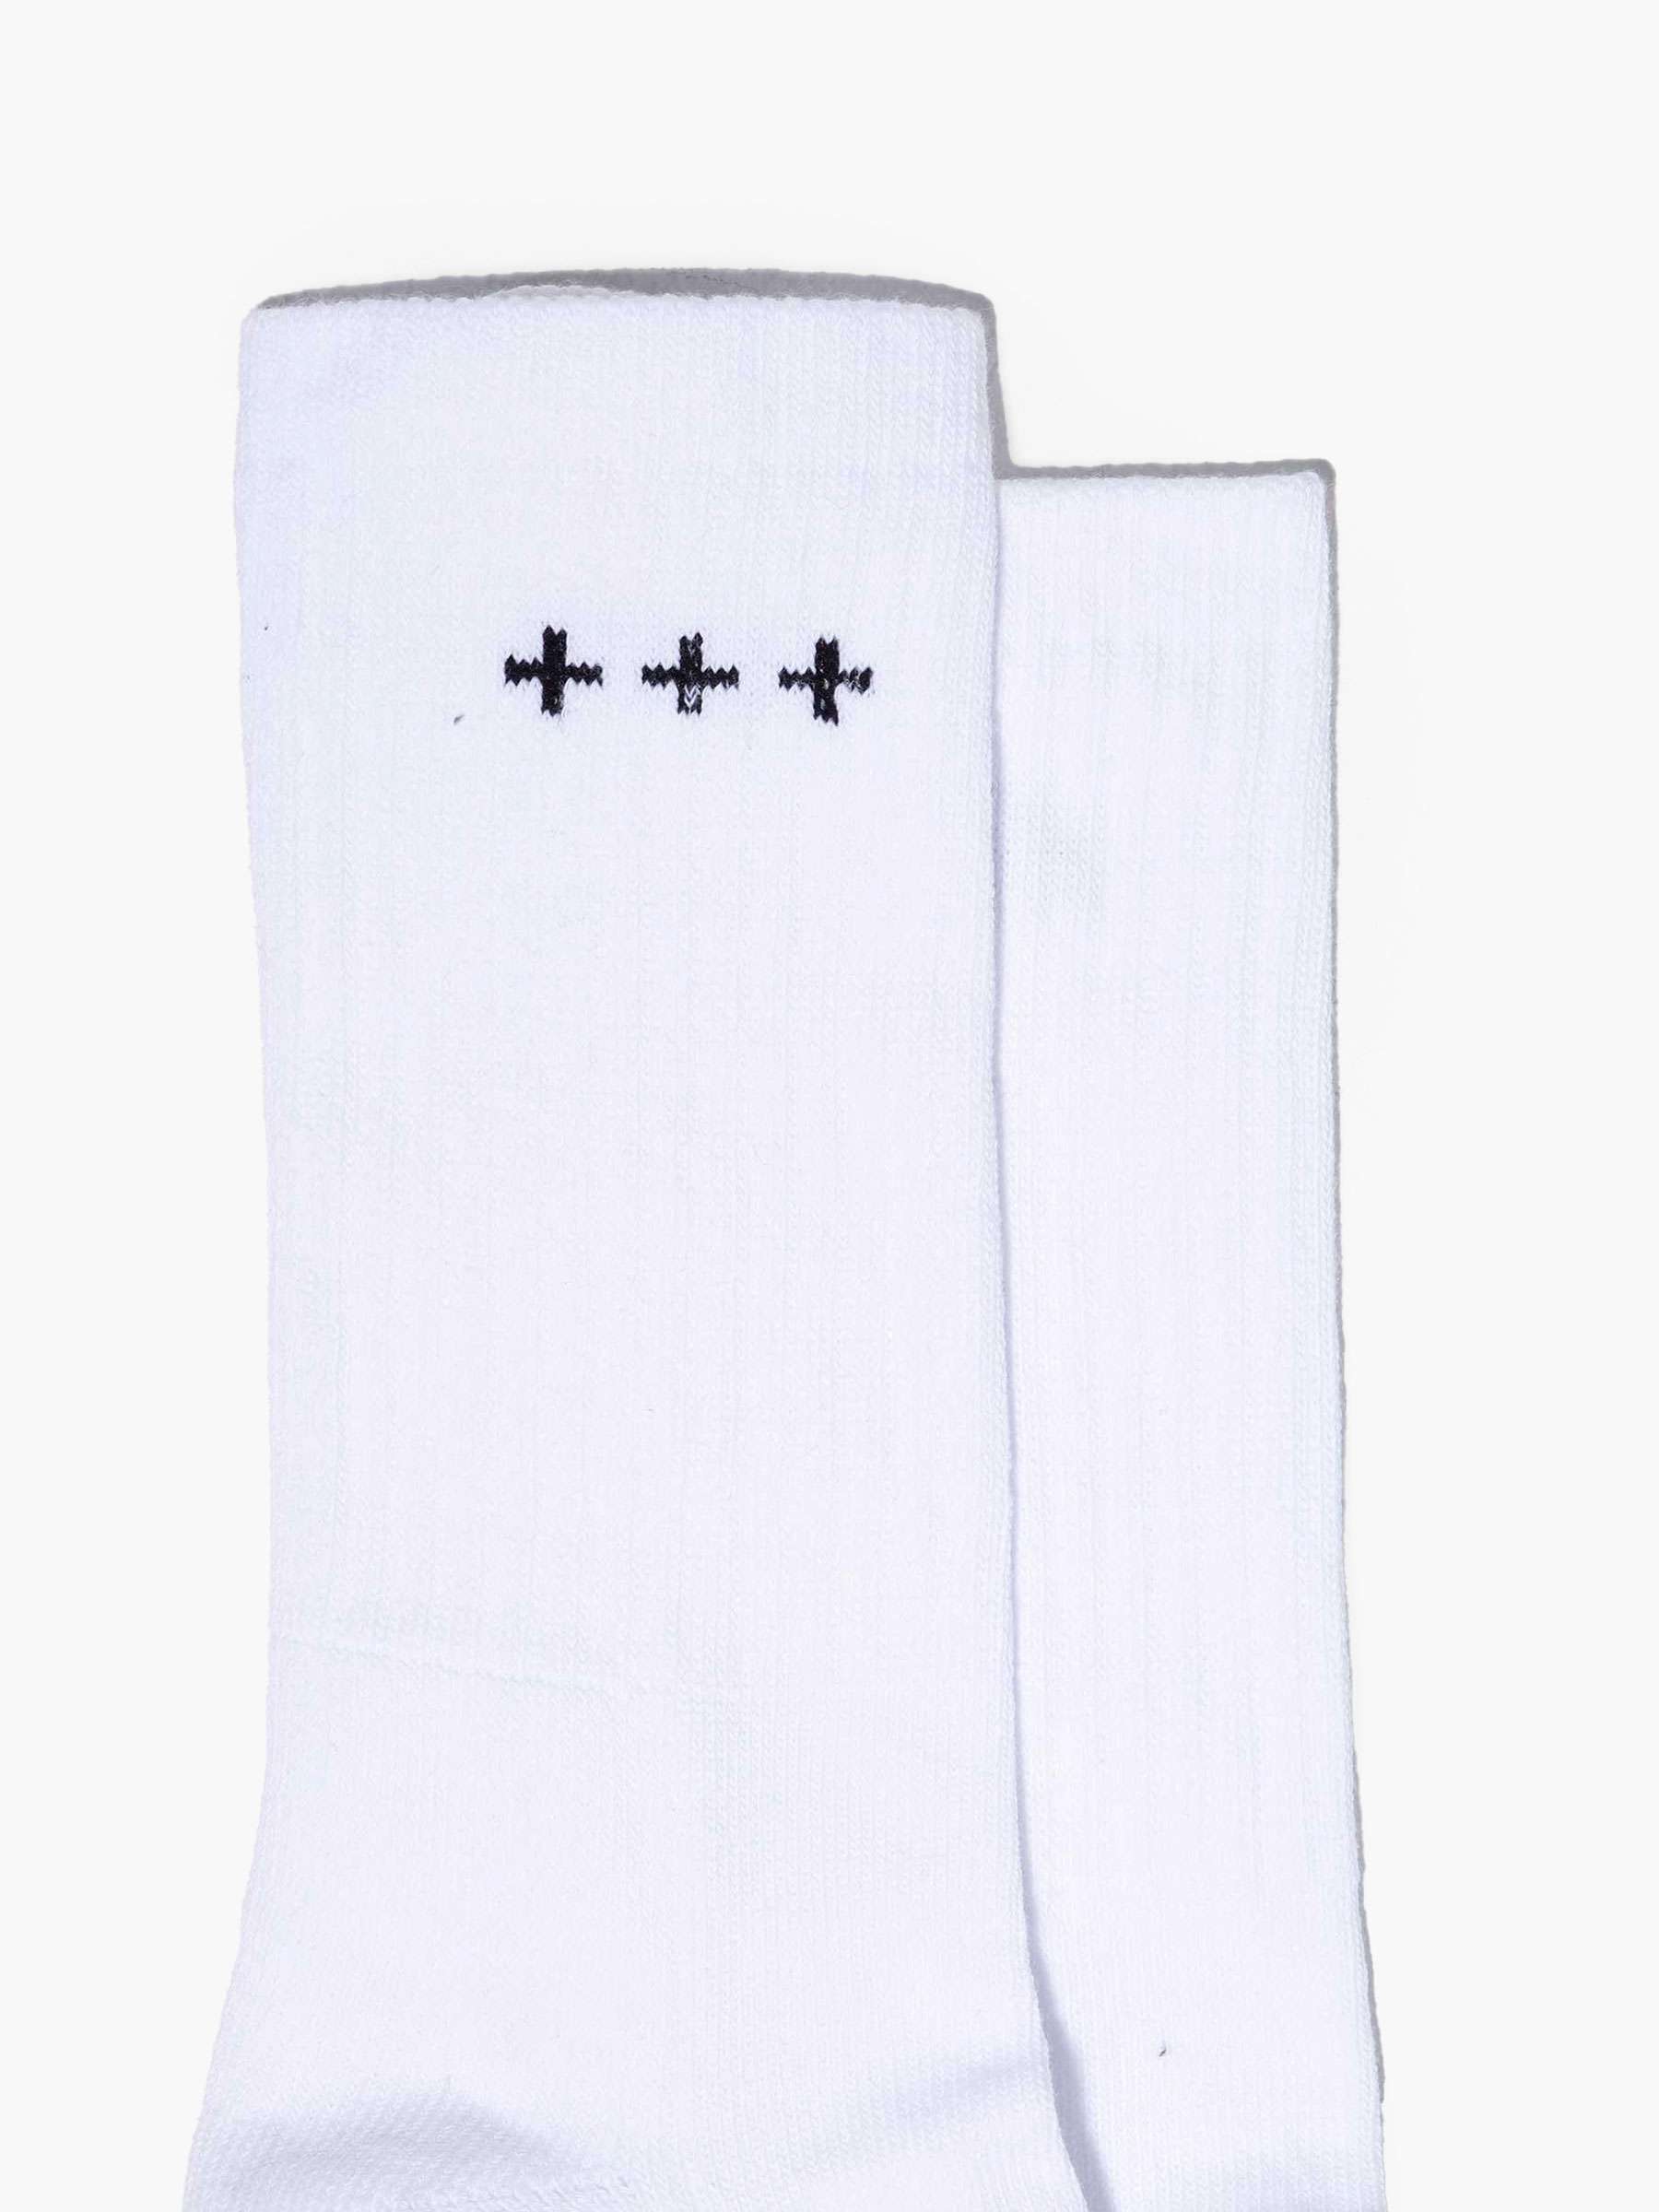 QB14 Sock White